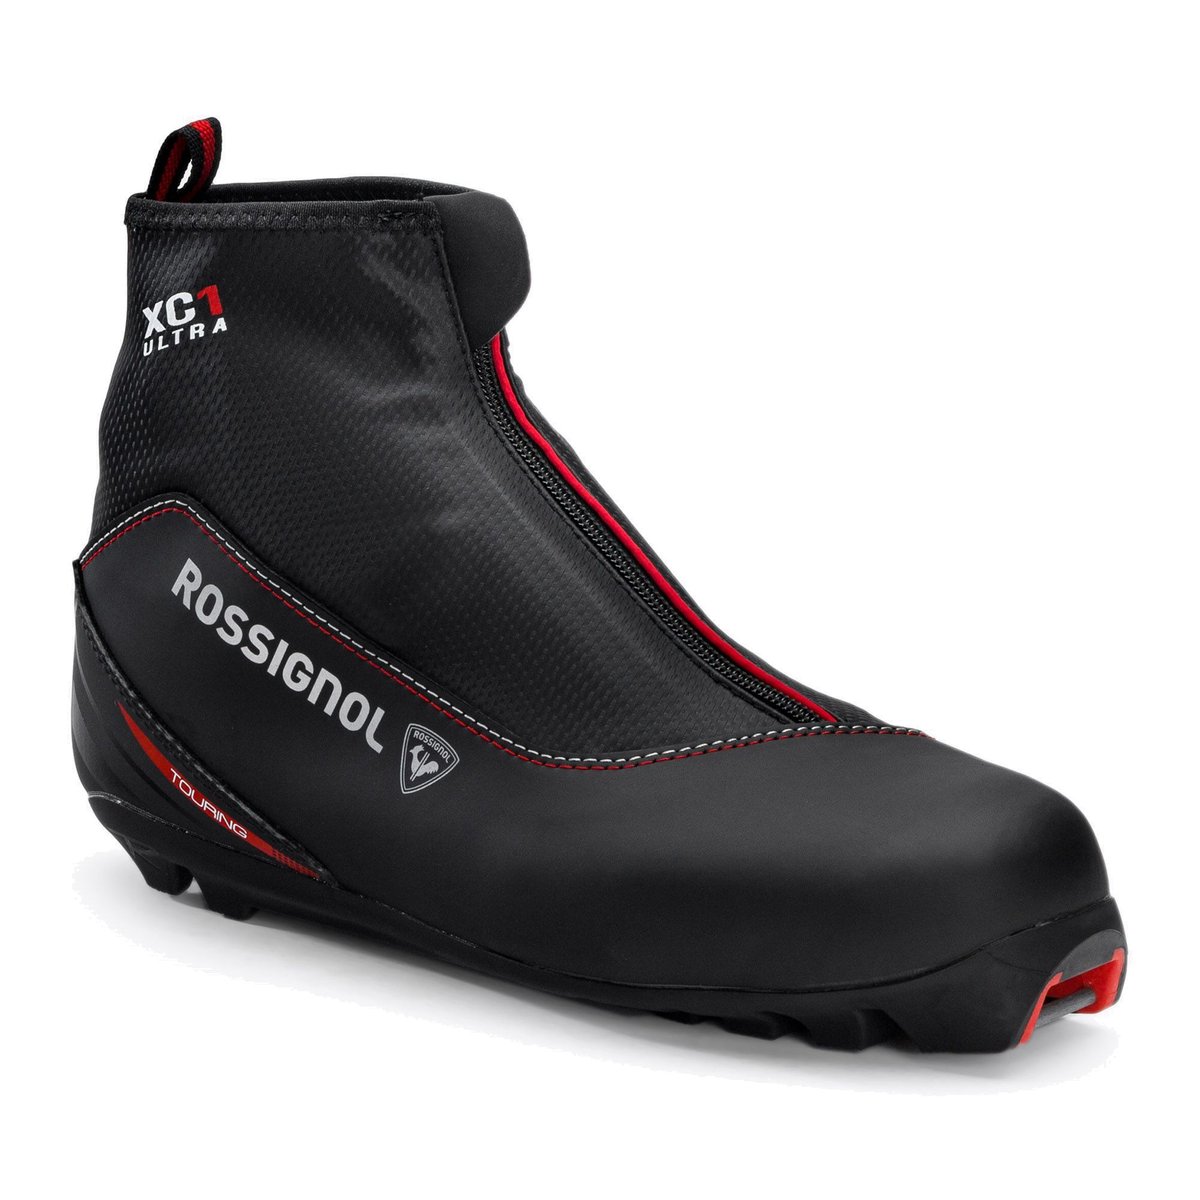 Buty do nart biegowych męskie Rossignol X-1 Ultra czarne RIJW080  45 eu